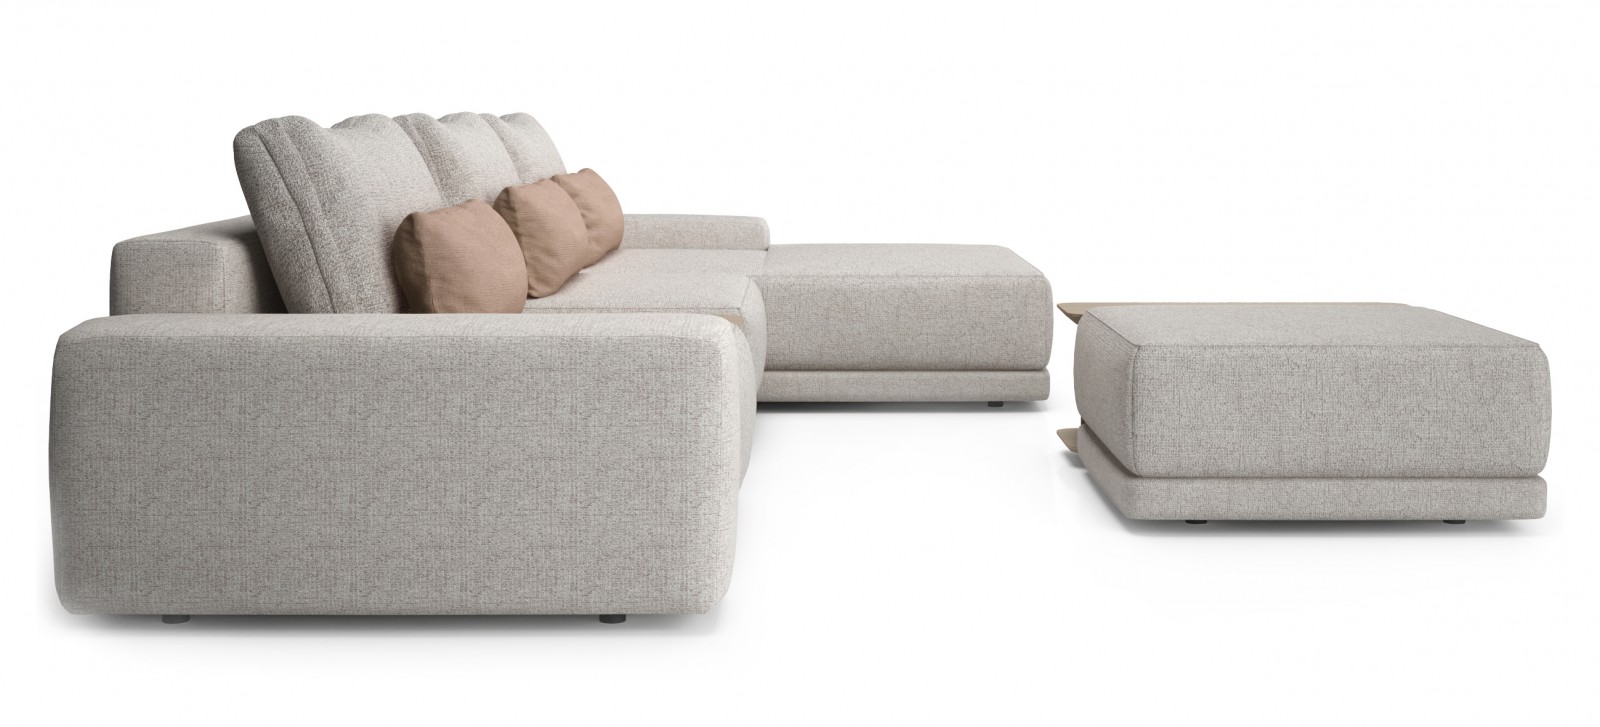 168" Modular Sofa